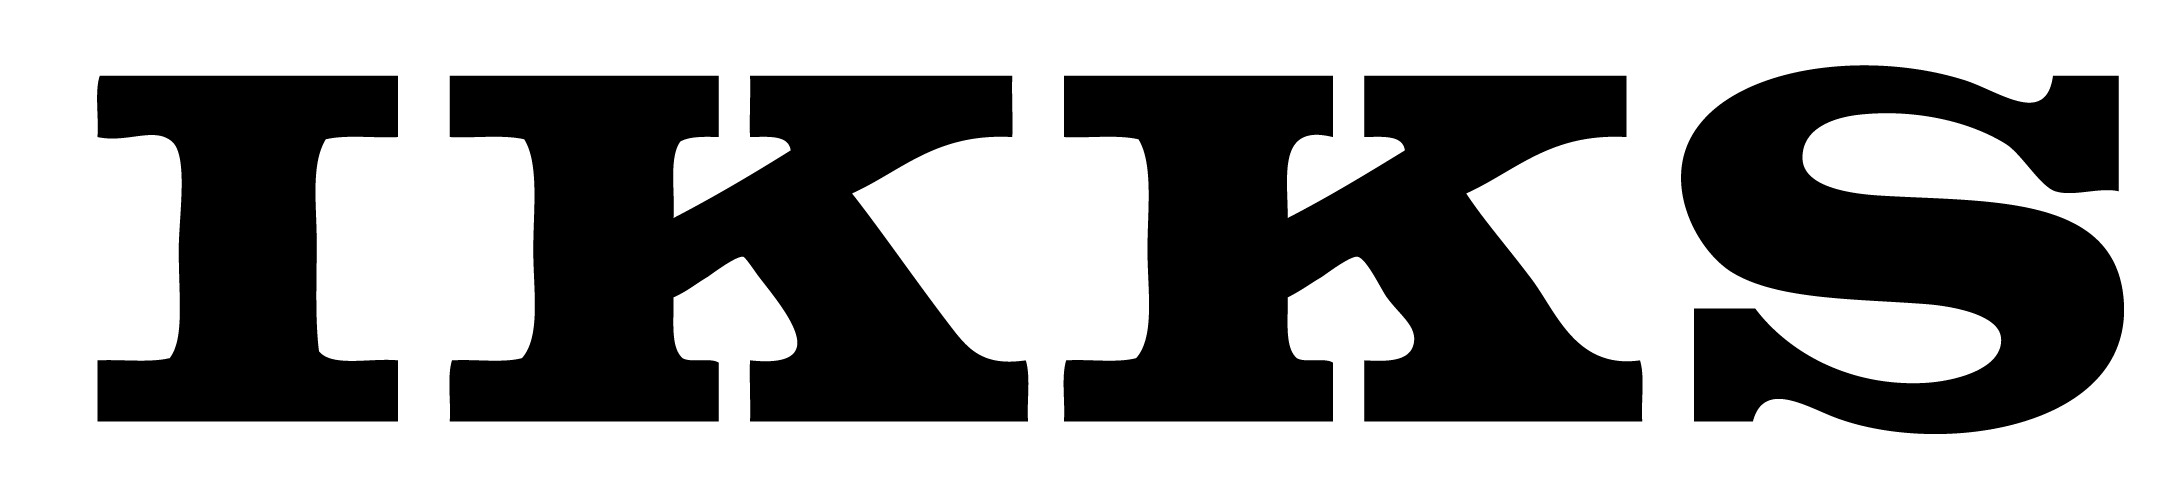 Ikks Logo icons